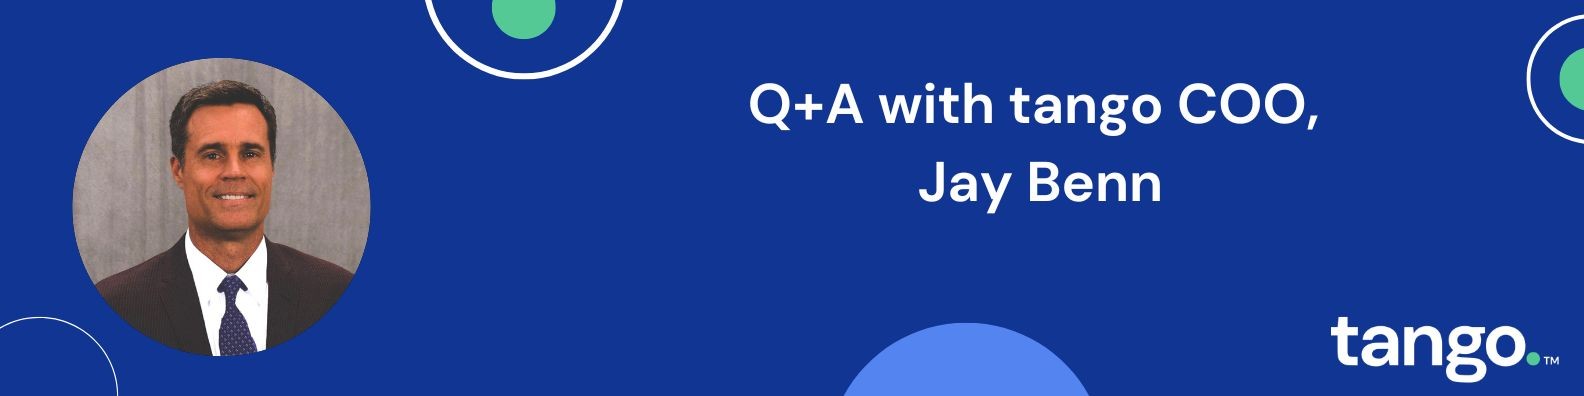 Q+A with Jay Benn